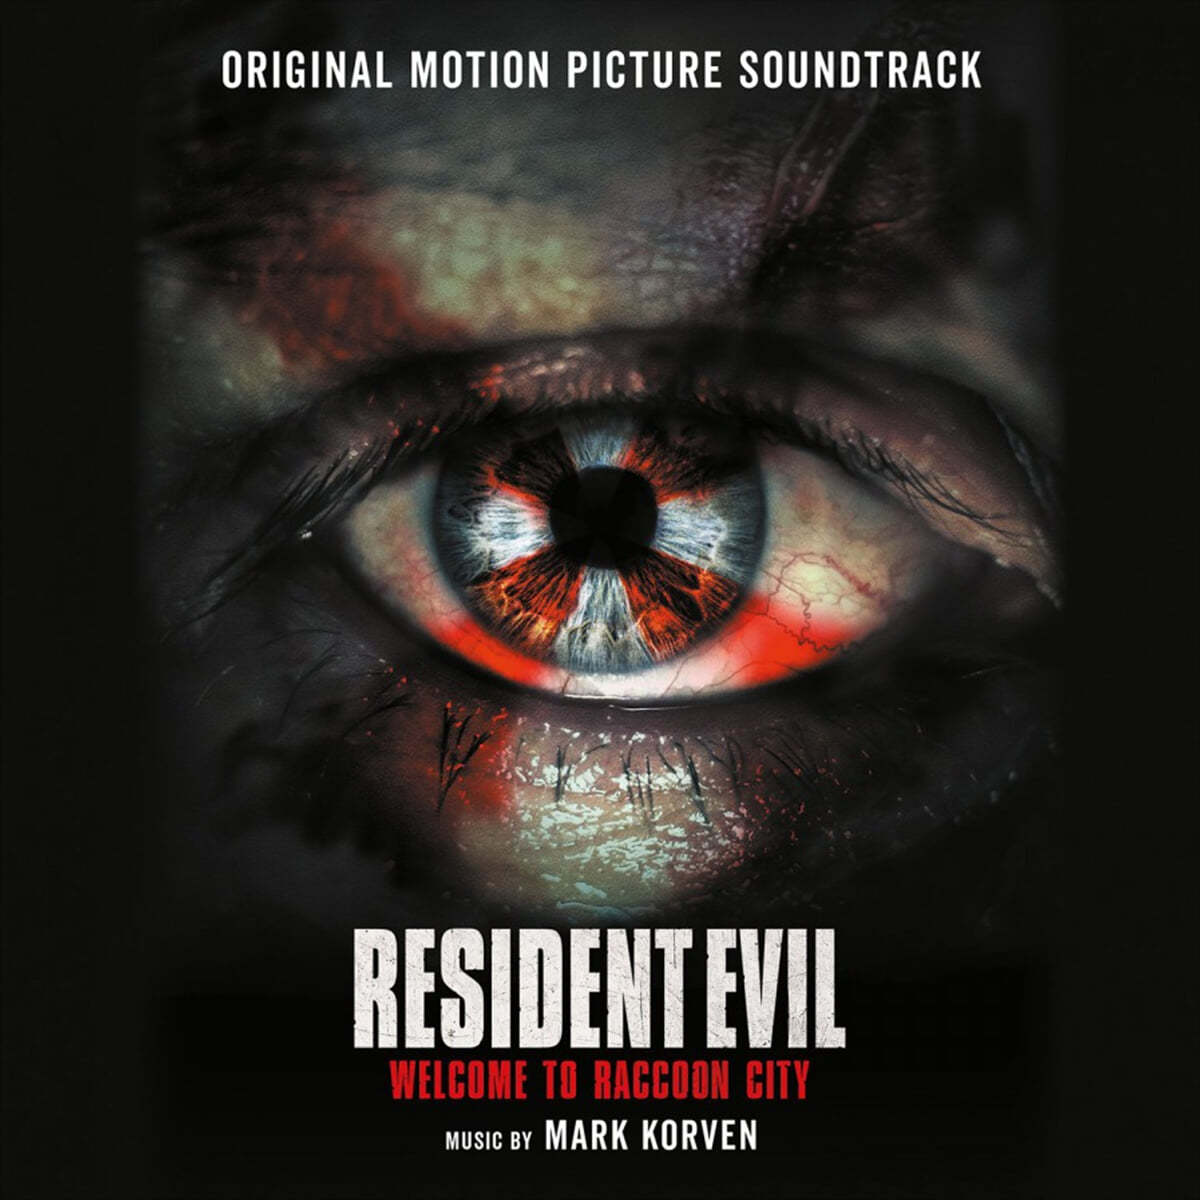 레지던트 이블: 라쿤시티 영화음악 (Resident Evil: Welcome to Raccoon City OST) [레드 컬러 2LP] 